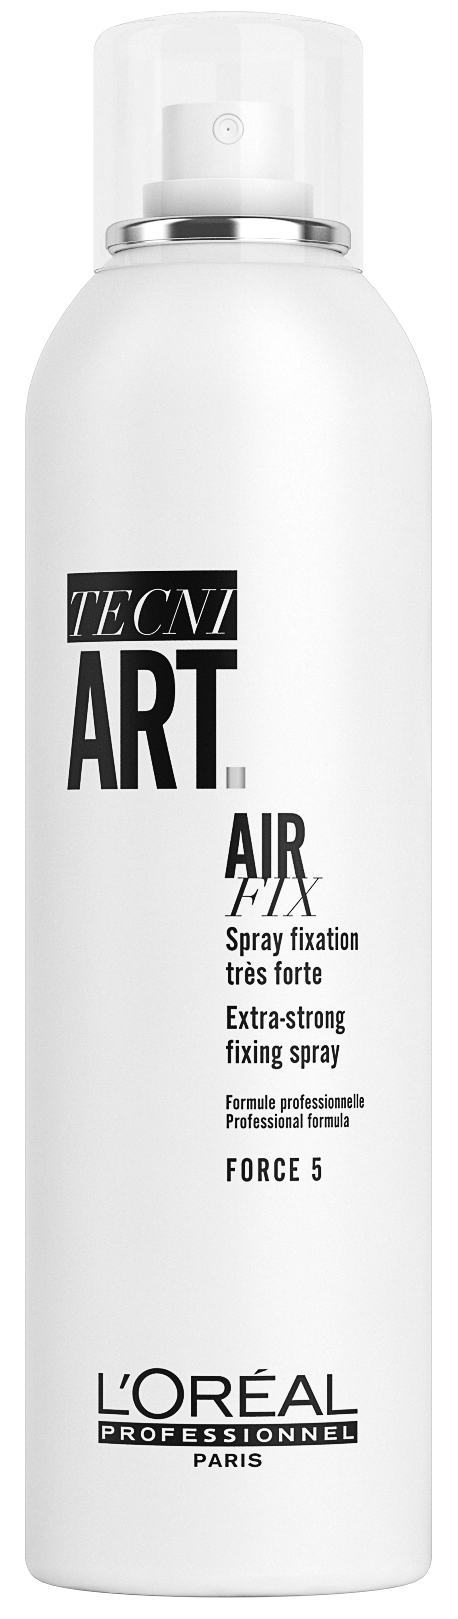 Air fix - Tecni.Art 400ml